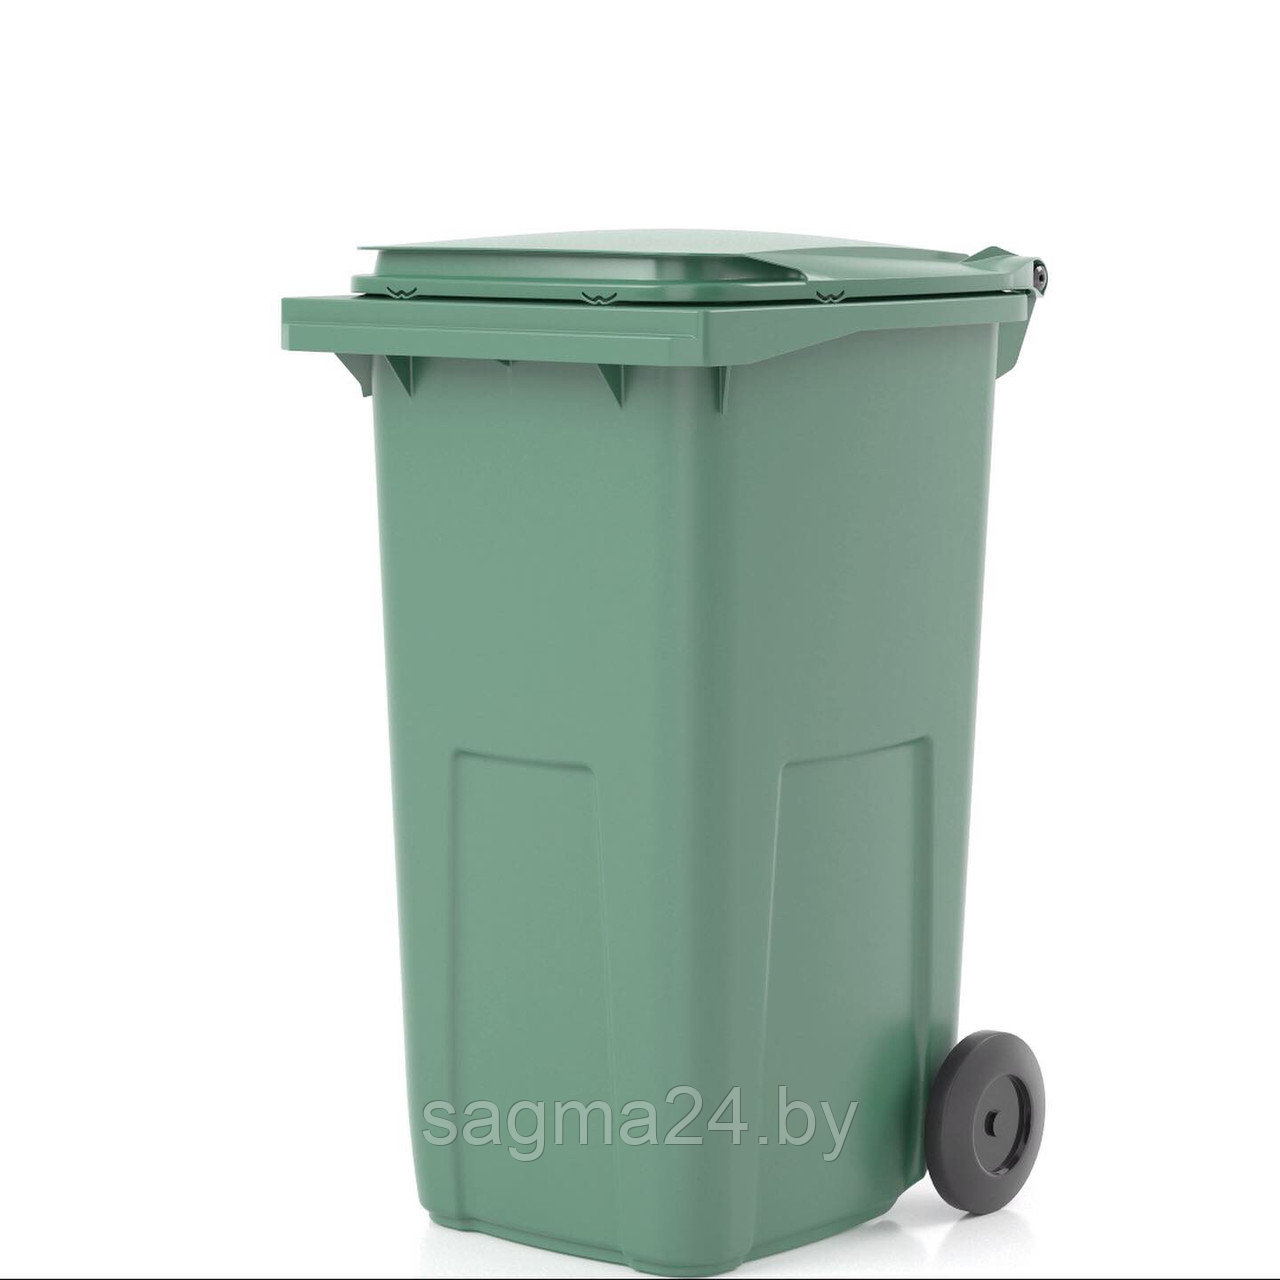 Пластиковый контейнер с крышкой для мусора объемом 240 литров